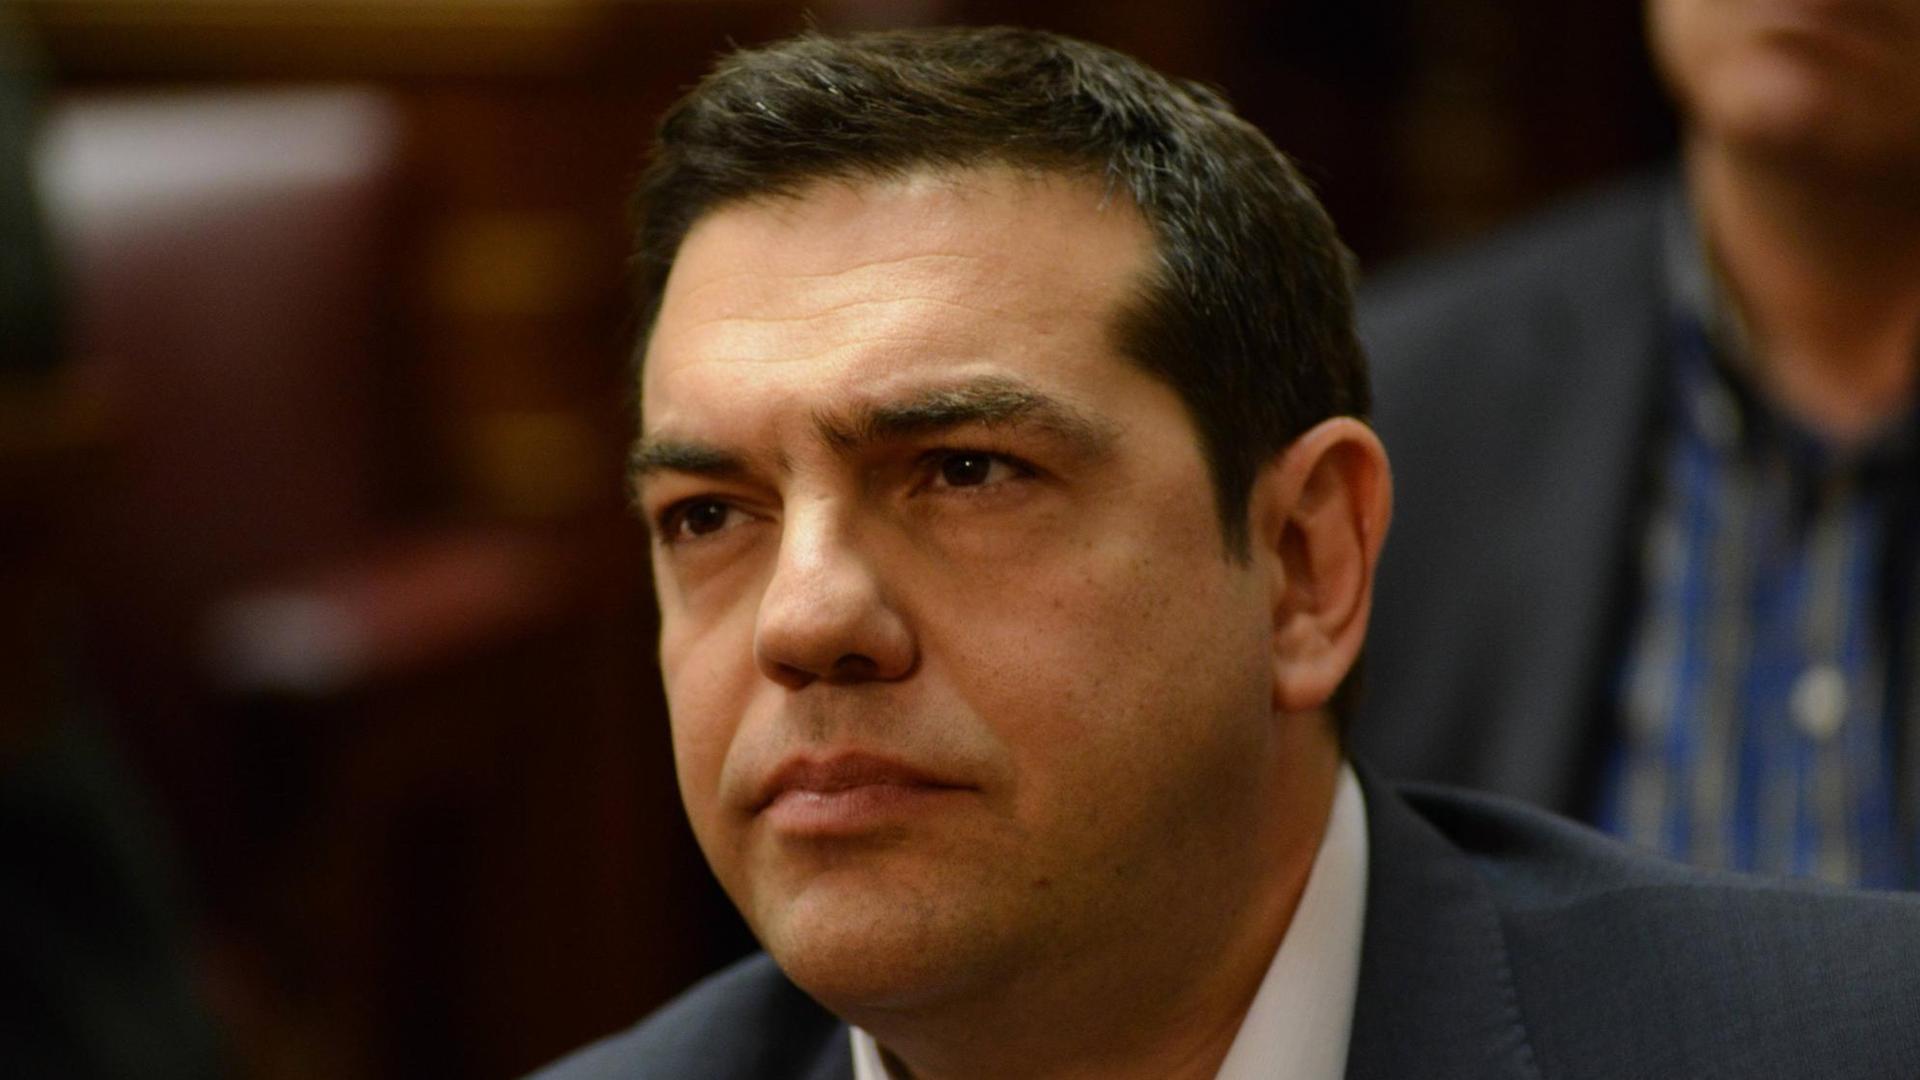 Der griechische Premierminister Alexis Tsipras bei einer außerordentlichen Sitzung seiner Syriza-Partei